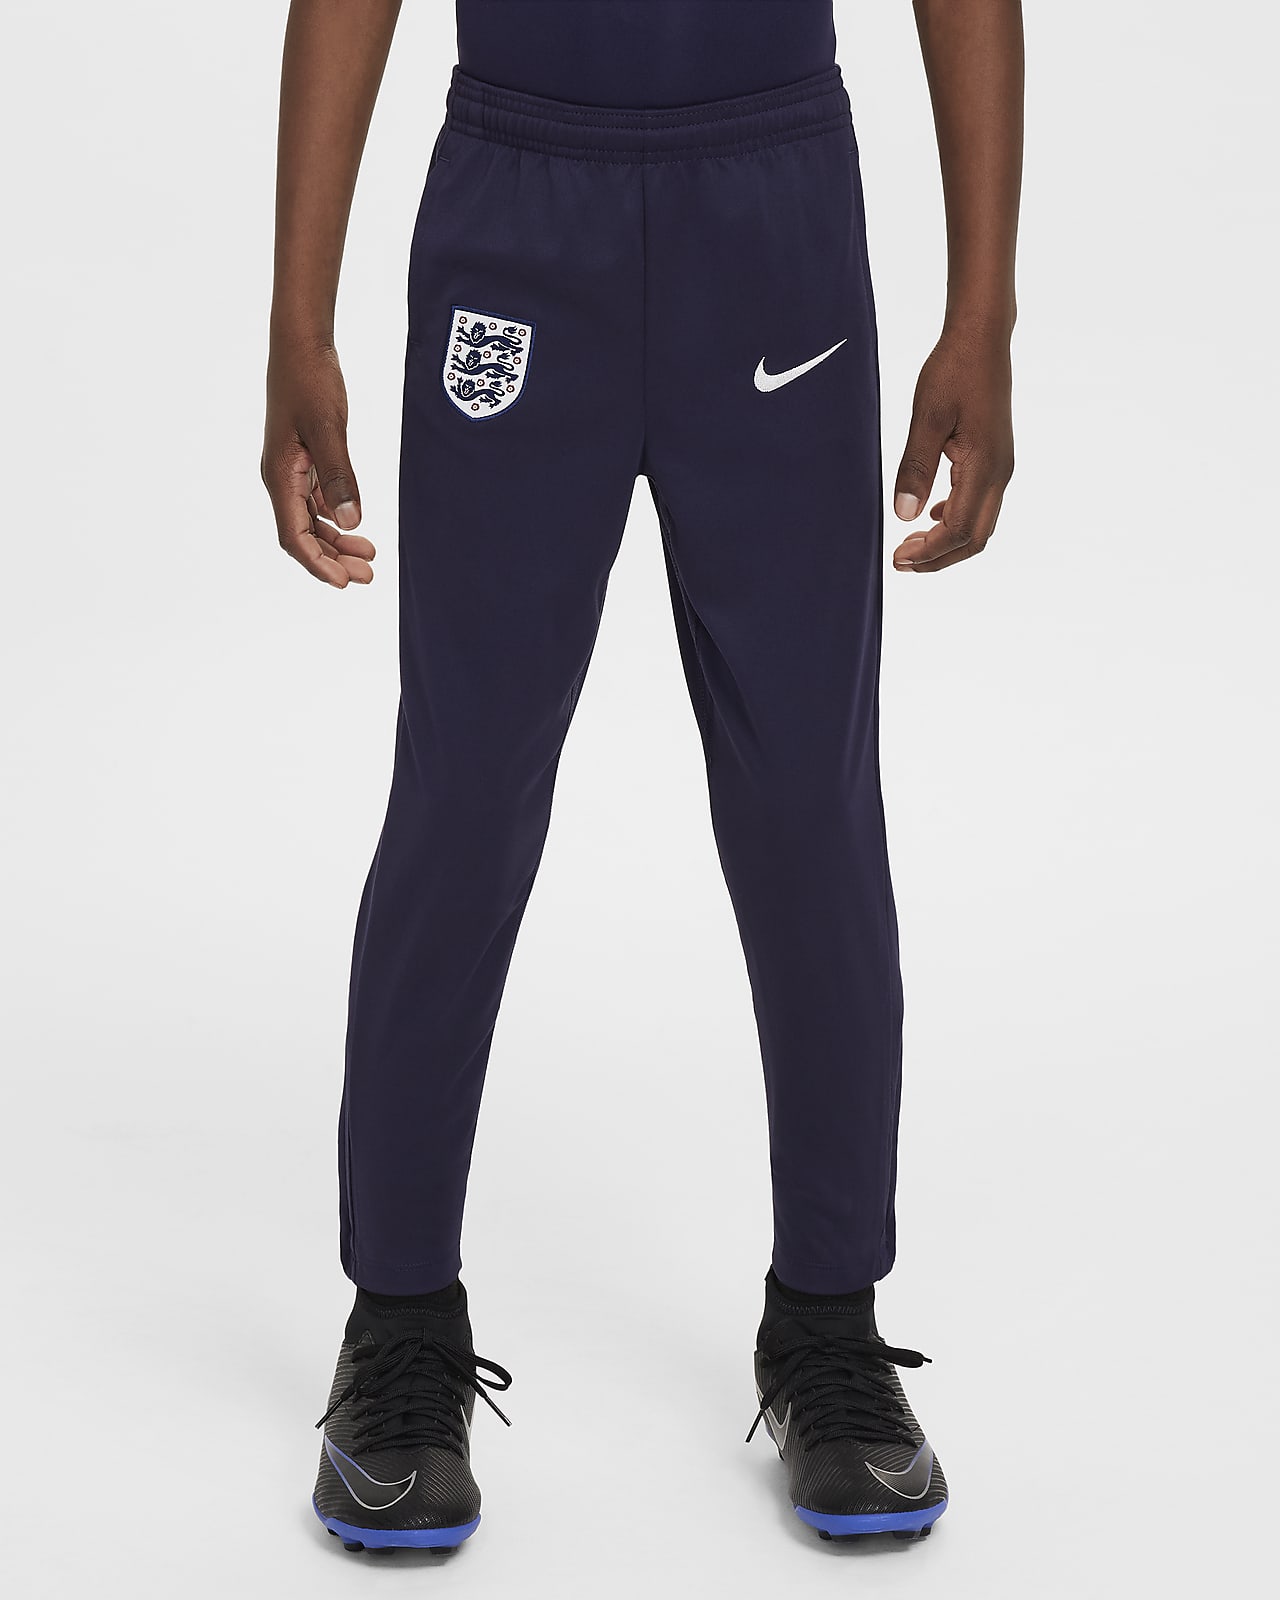 Pantaloni da calcio in maglia Nike Dri-FIT Inghilterra Academy Pro – Bambino/a